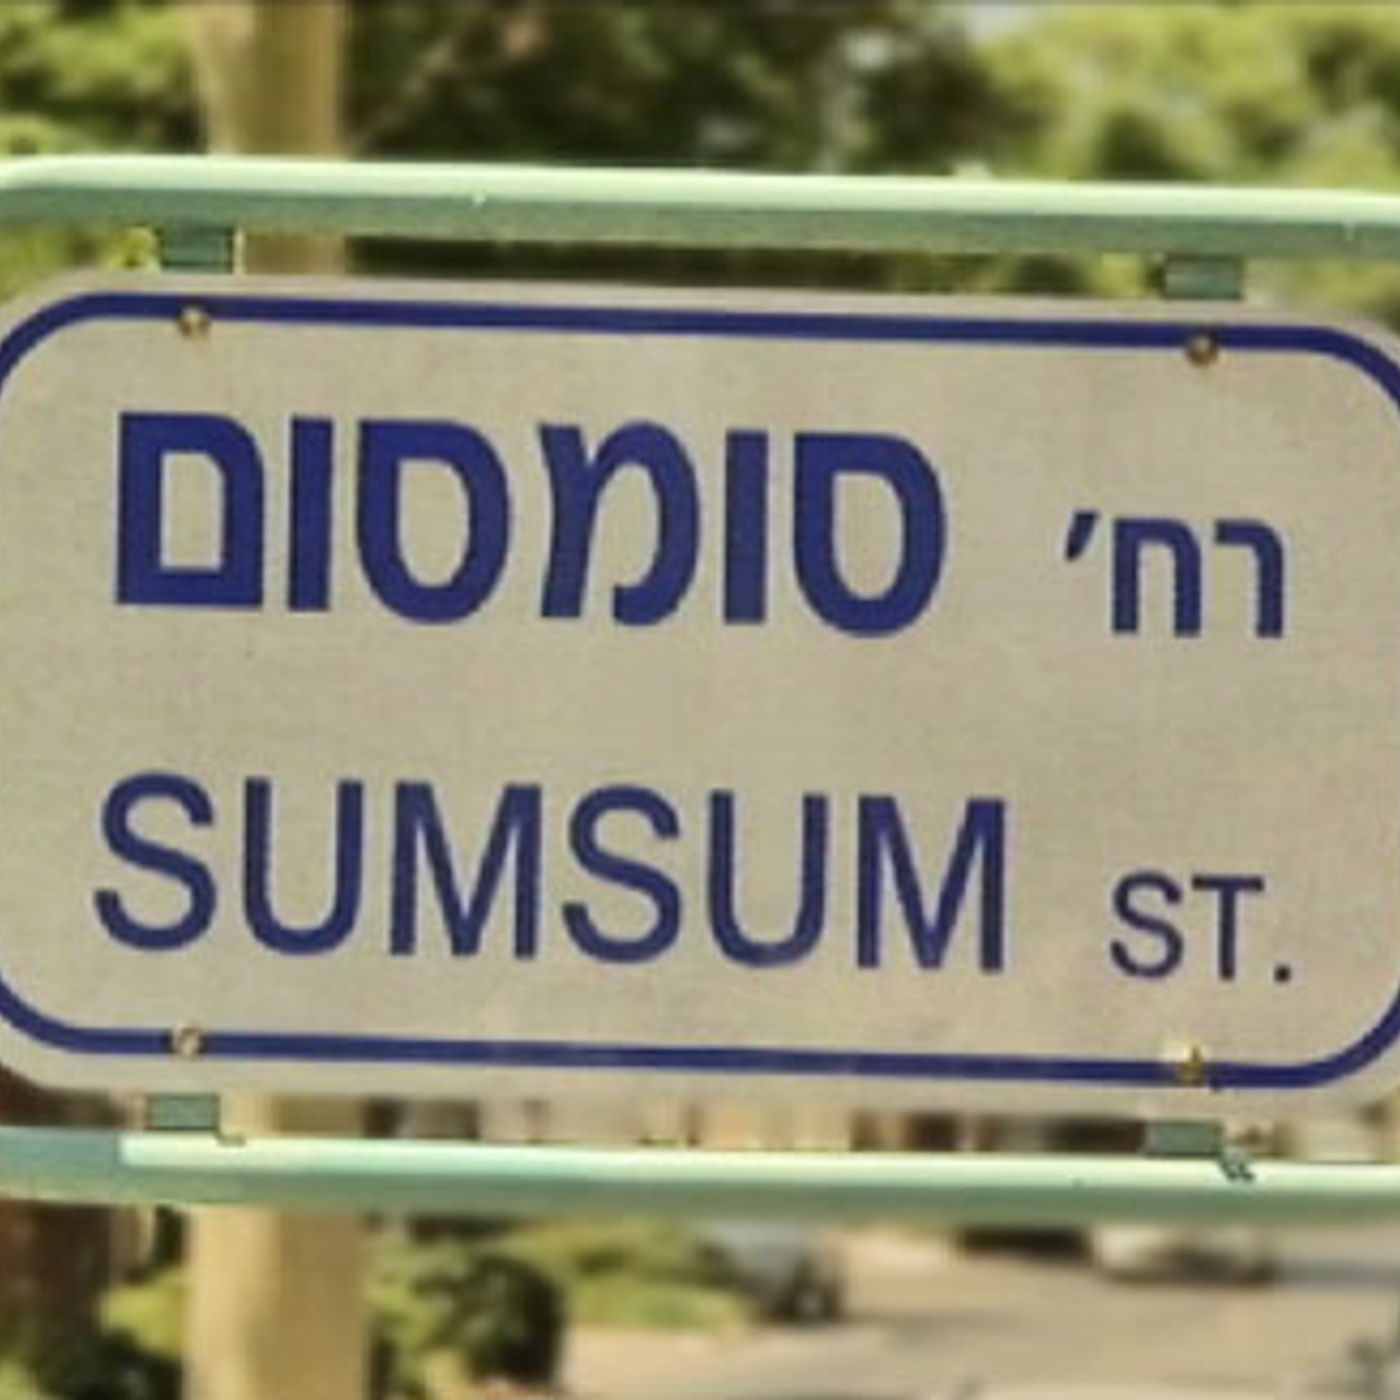 פרק 147: רחובות בישראל - הופעת אורח בתכנית גלילאו